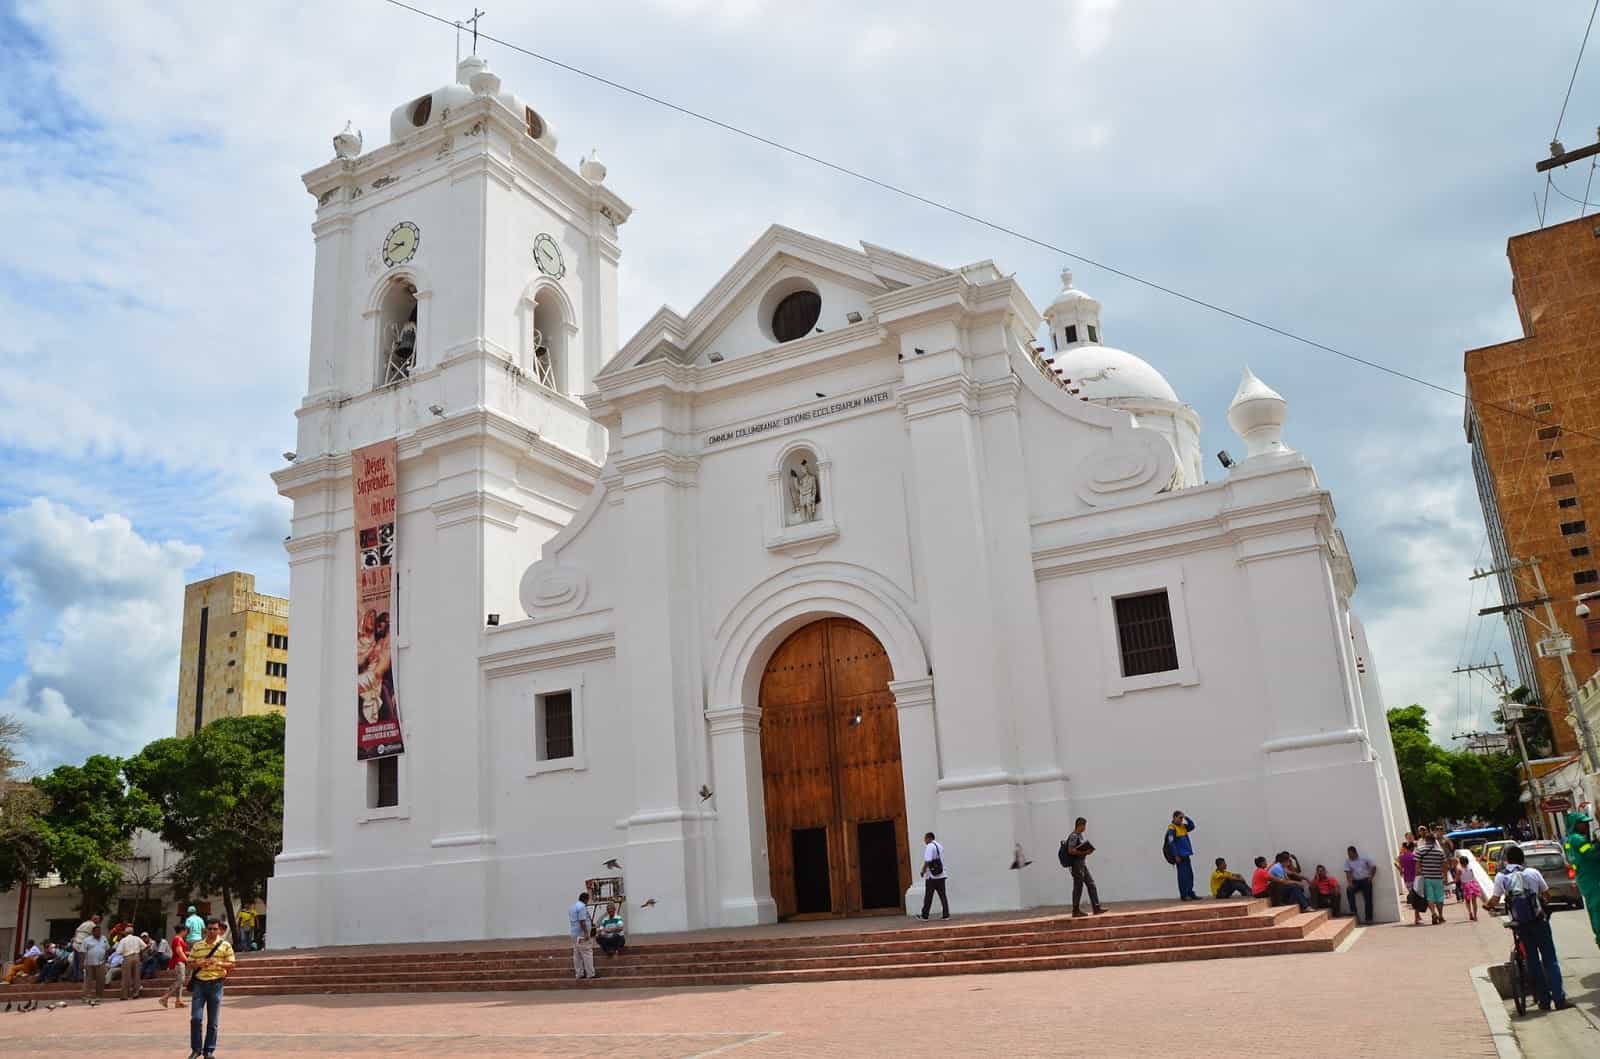 Catedral de Santa Marta in Santa Marta, Magdalena, Colombia